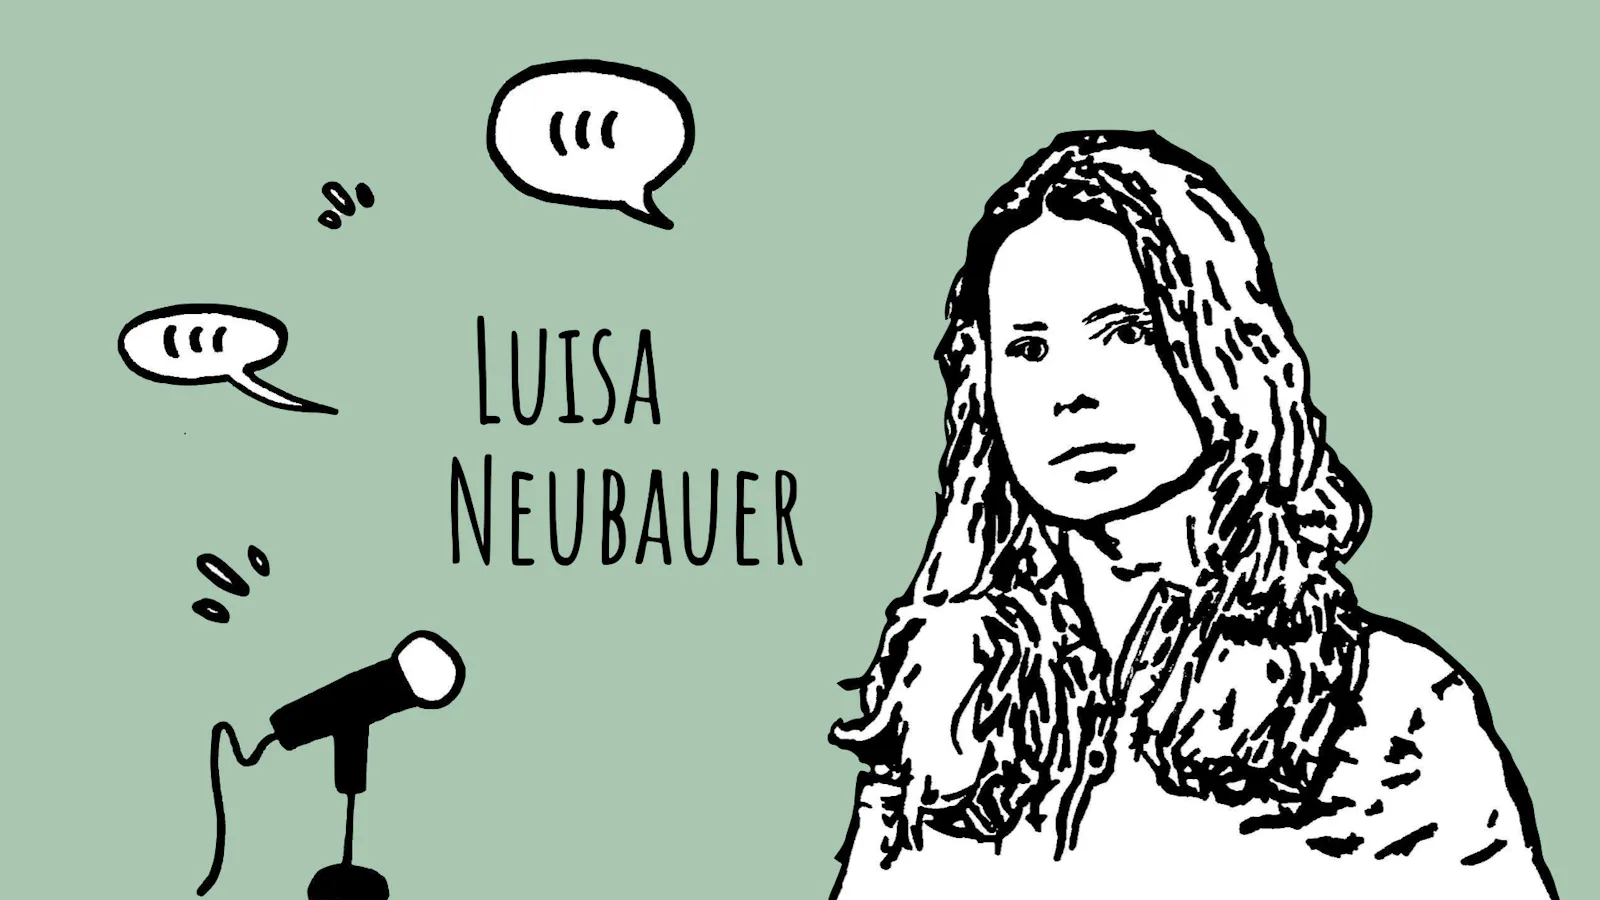 Auch die deutsche Klimaaktivistin Luisa Neubauer war bereits bei der "Treibhauspost" zu Gast und hat über Klima-Ungerechtigkeit gesprochen. Link in der Bildunterschrift.